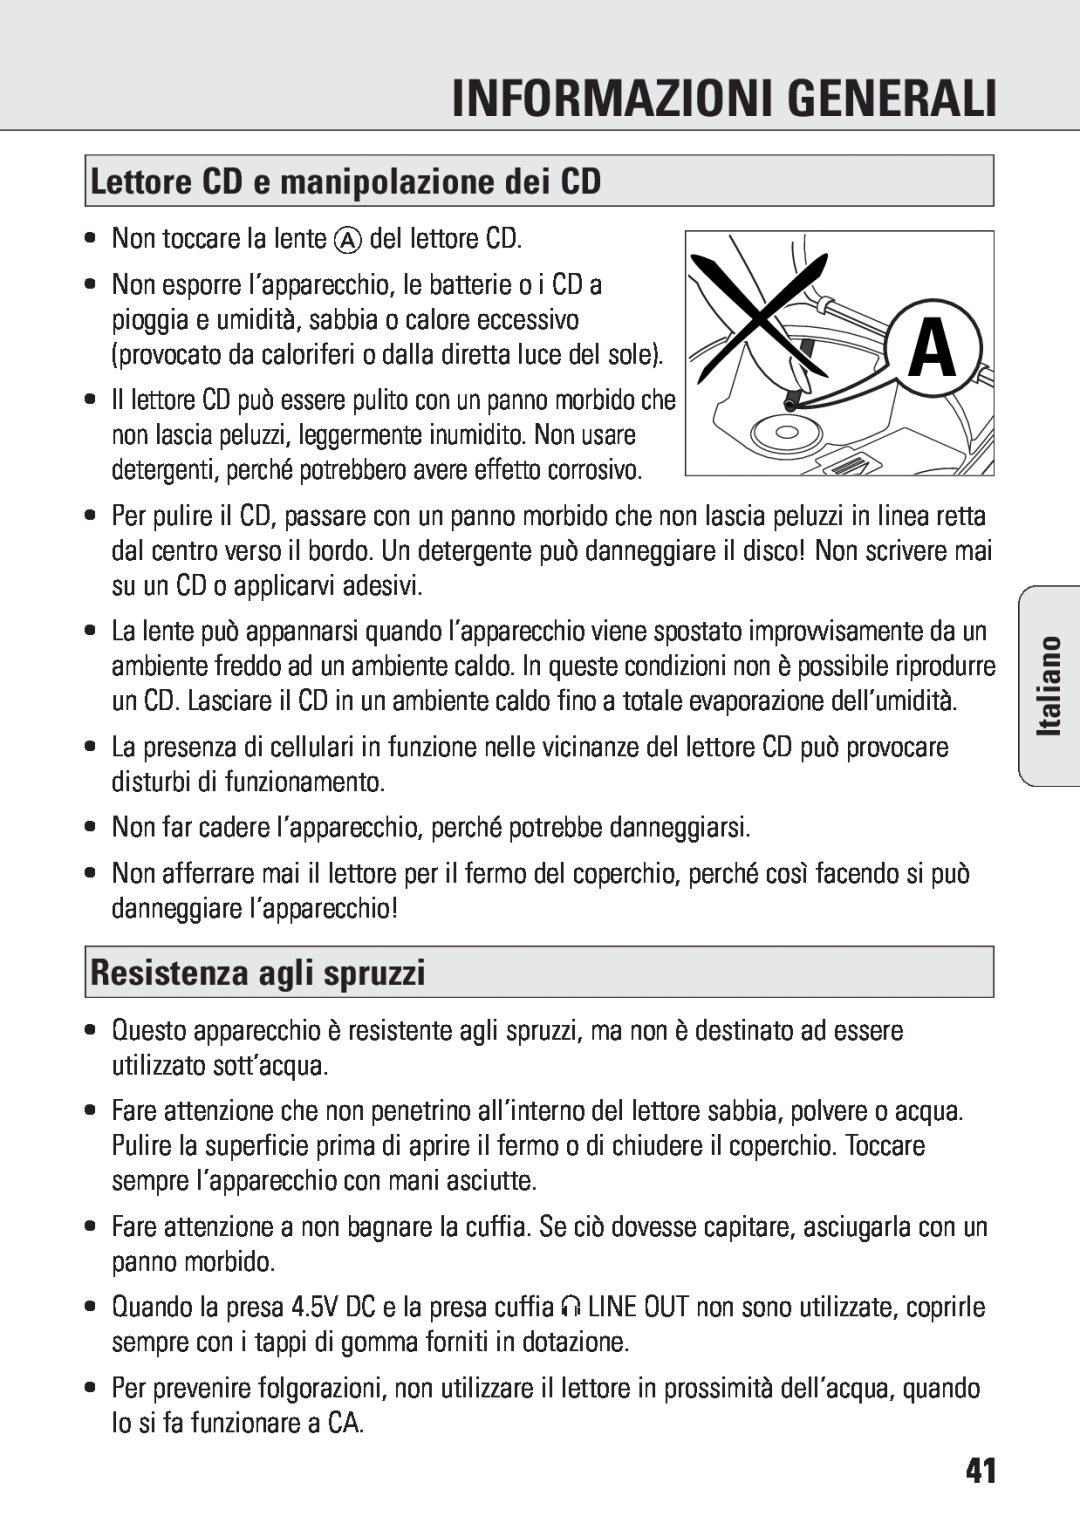 Philips ACT 7583 manual Informazioni Generali, Lettore CD e manipolazione dei CD, Resistenza agli spruzzi, Italiano 